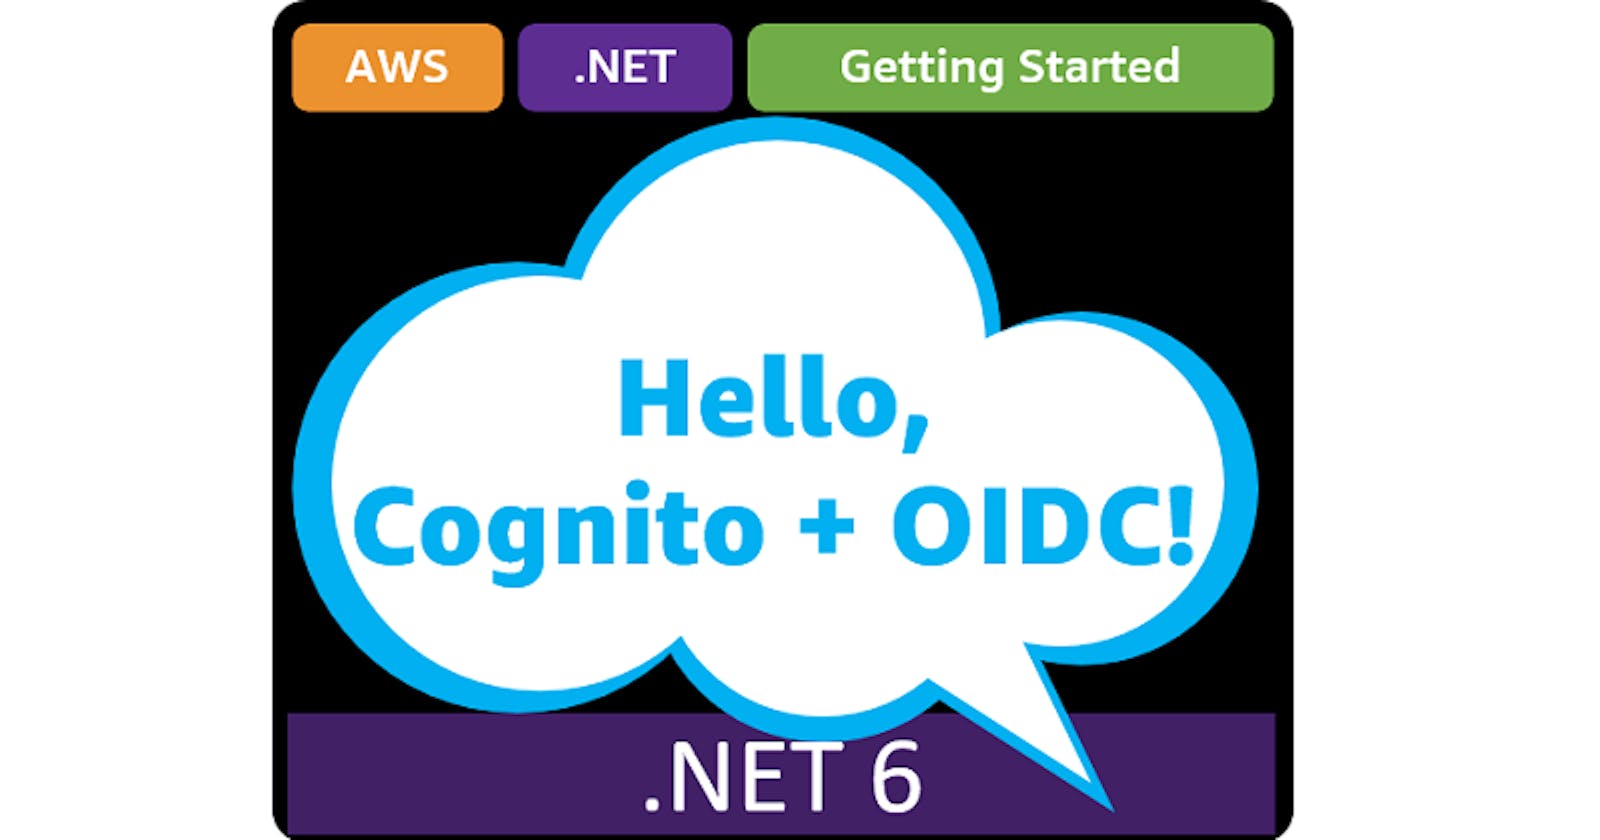 Hello, Cognito + OIDC!